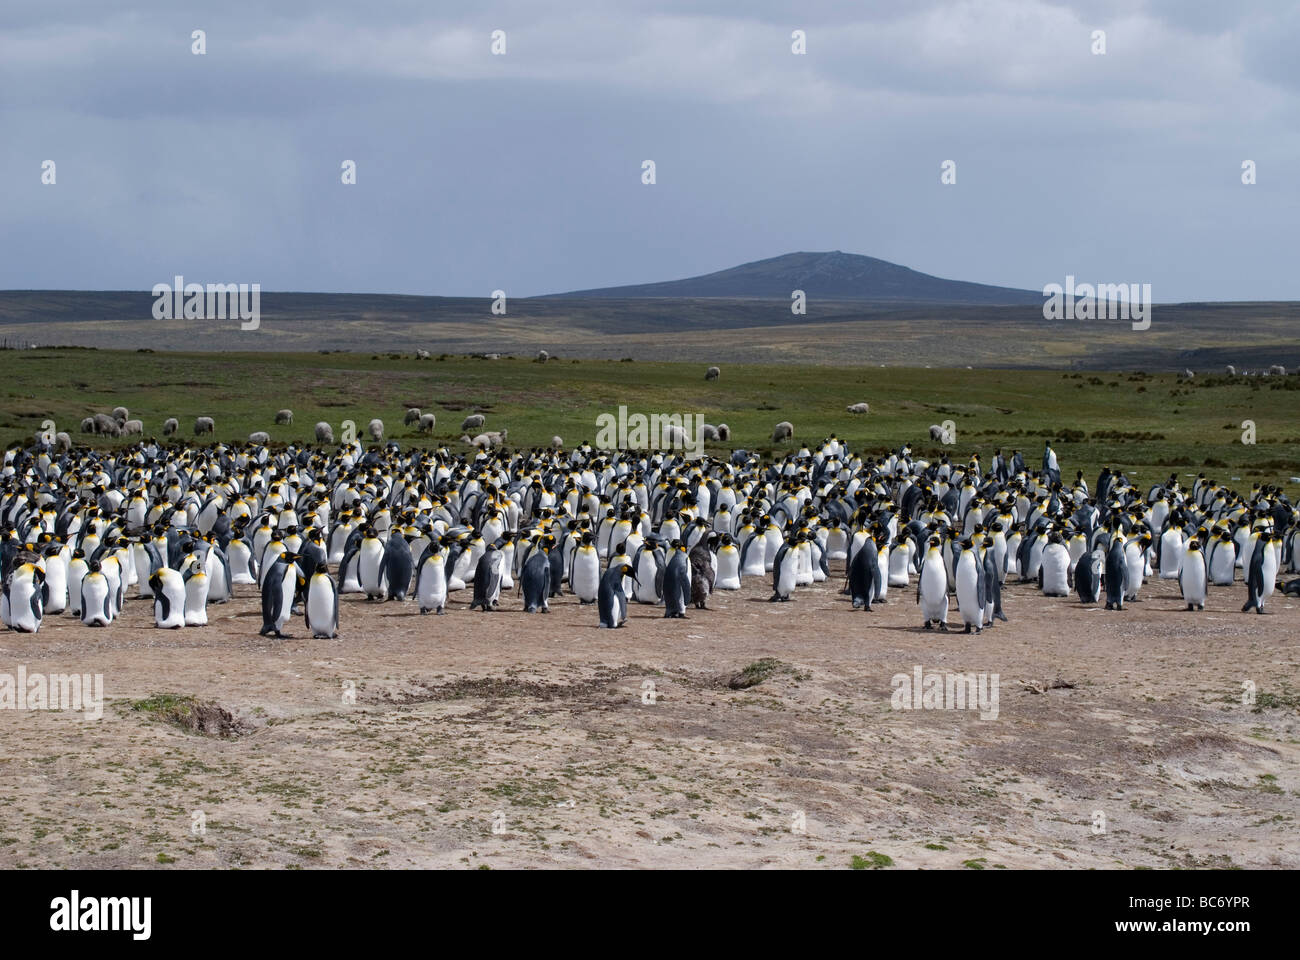 Una colonia de Pingüinos rey, aptenodytes patagonicus, al borde de una playa y tierras de pastoreo con ovejas detrás de ellos Foto de stock